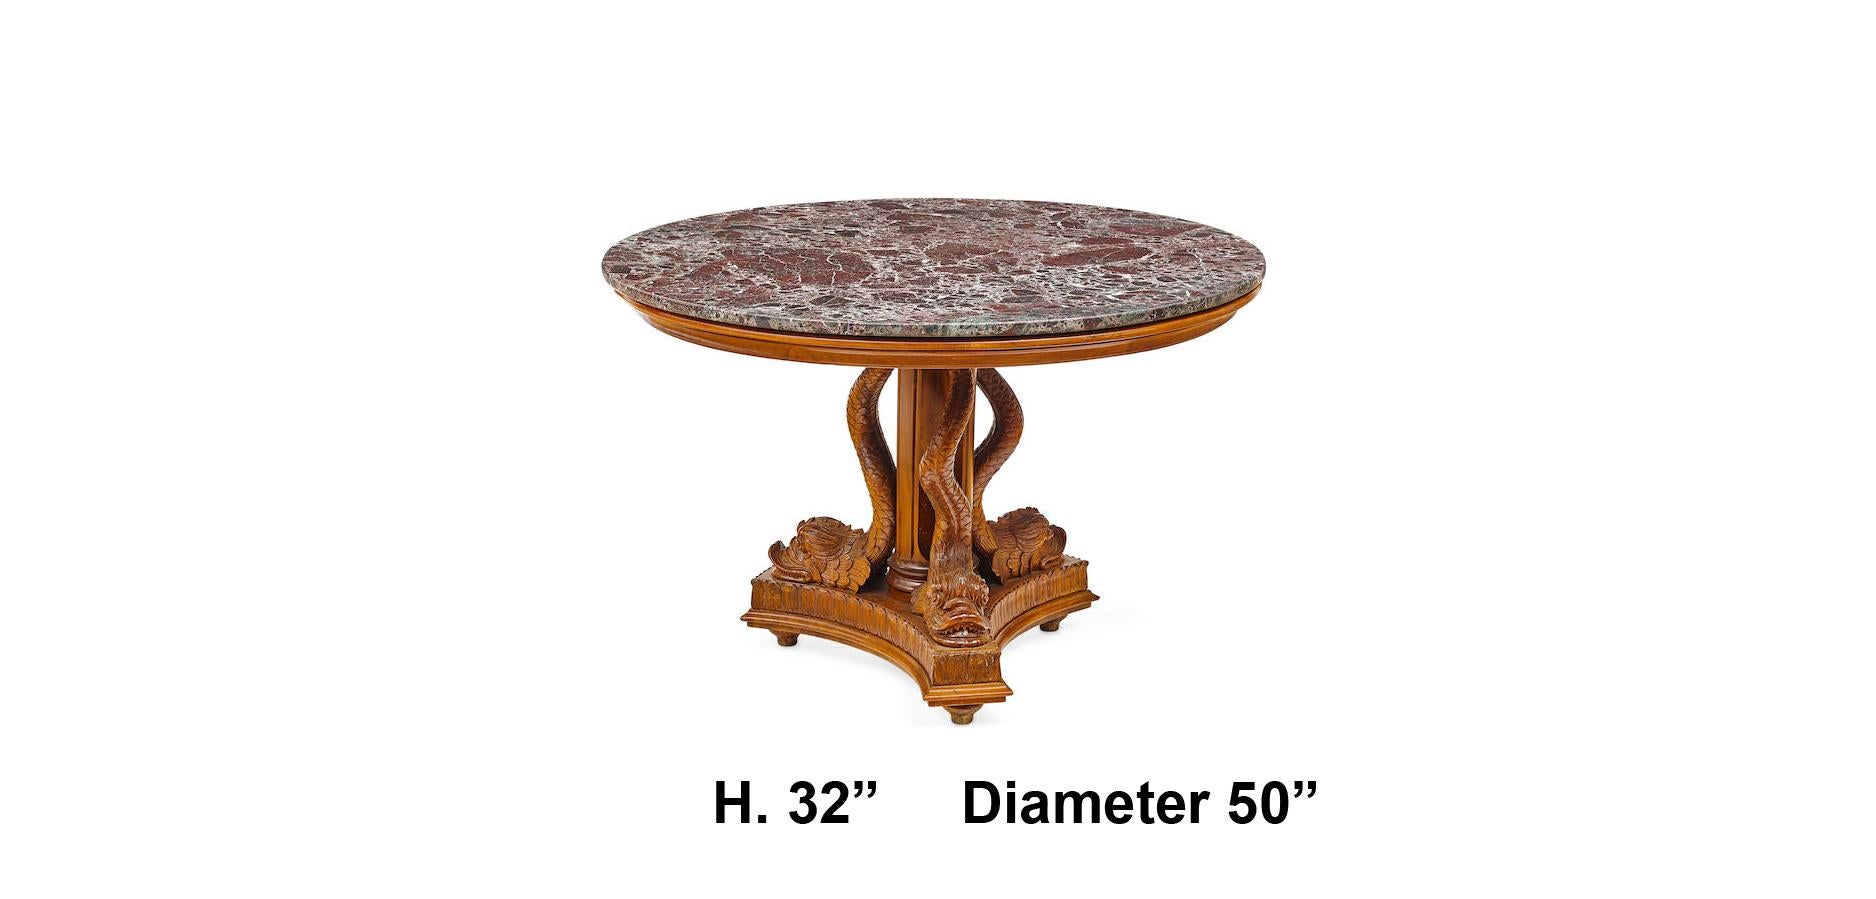 Fabulous 19. Jahrhundert italienischen neoklassischen geschnitzt Nussbaum Delphin Bein Runde Mitte Tisch mit runden rouge Marmorplatte.
Fein geschnitzte Delphine aus Nussbaumholz, mit viel Liebe zum Detail.